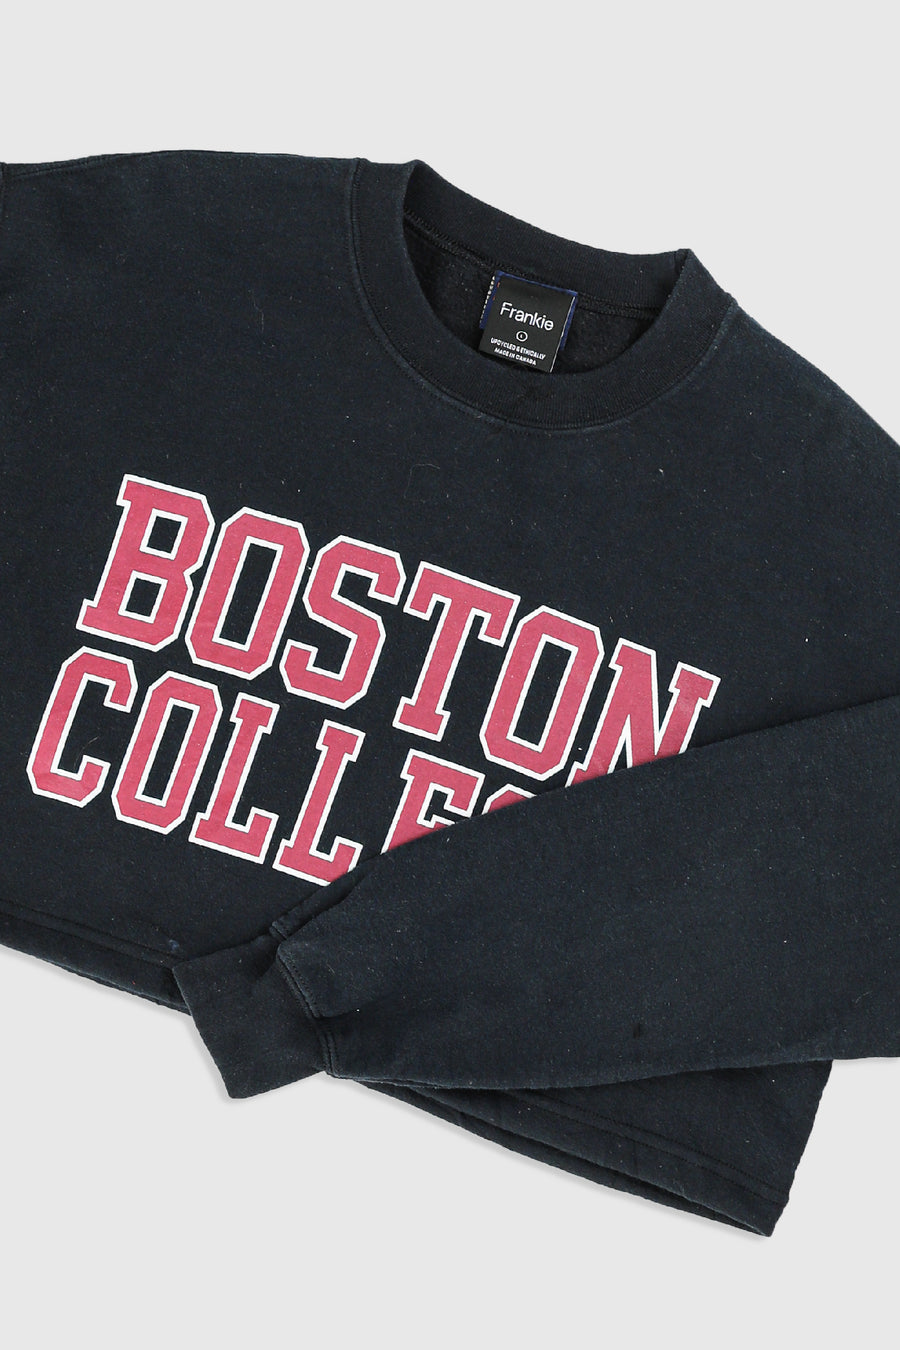 Rework Boston College Crop Sweatshirt - L